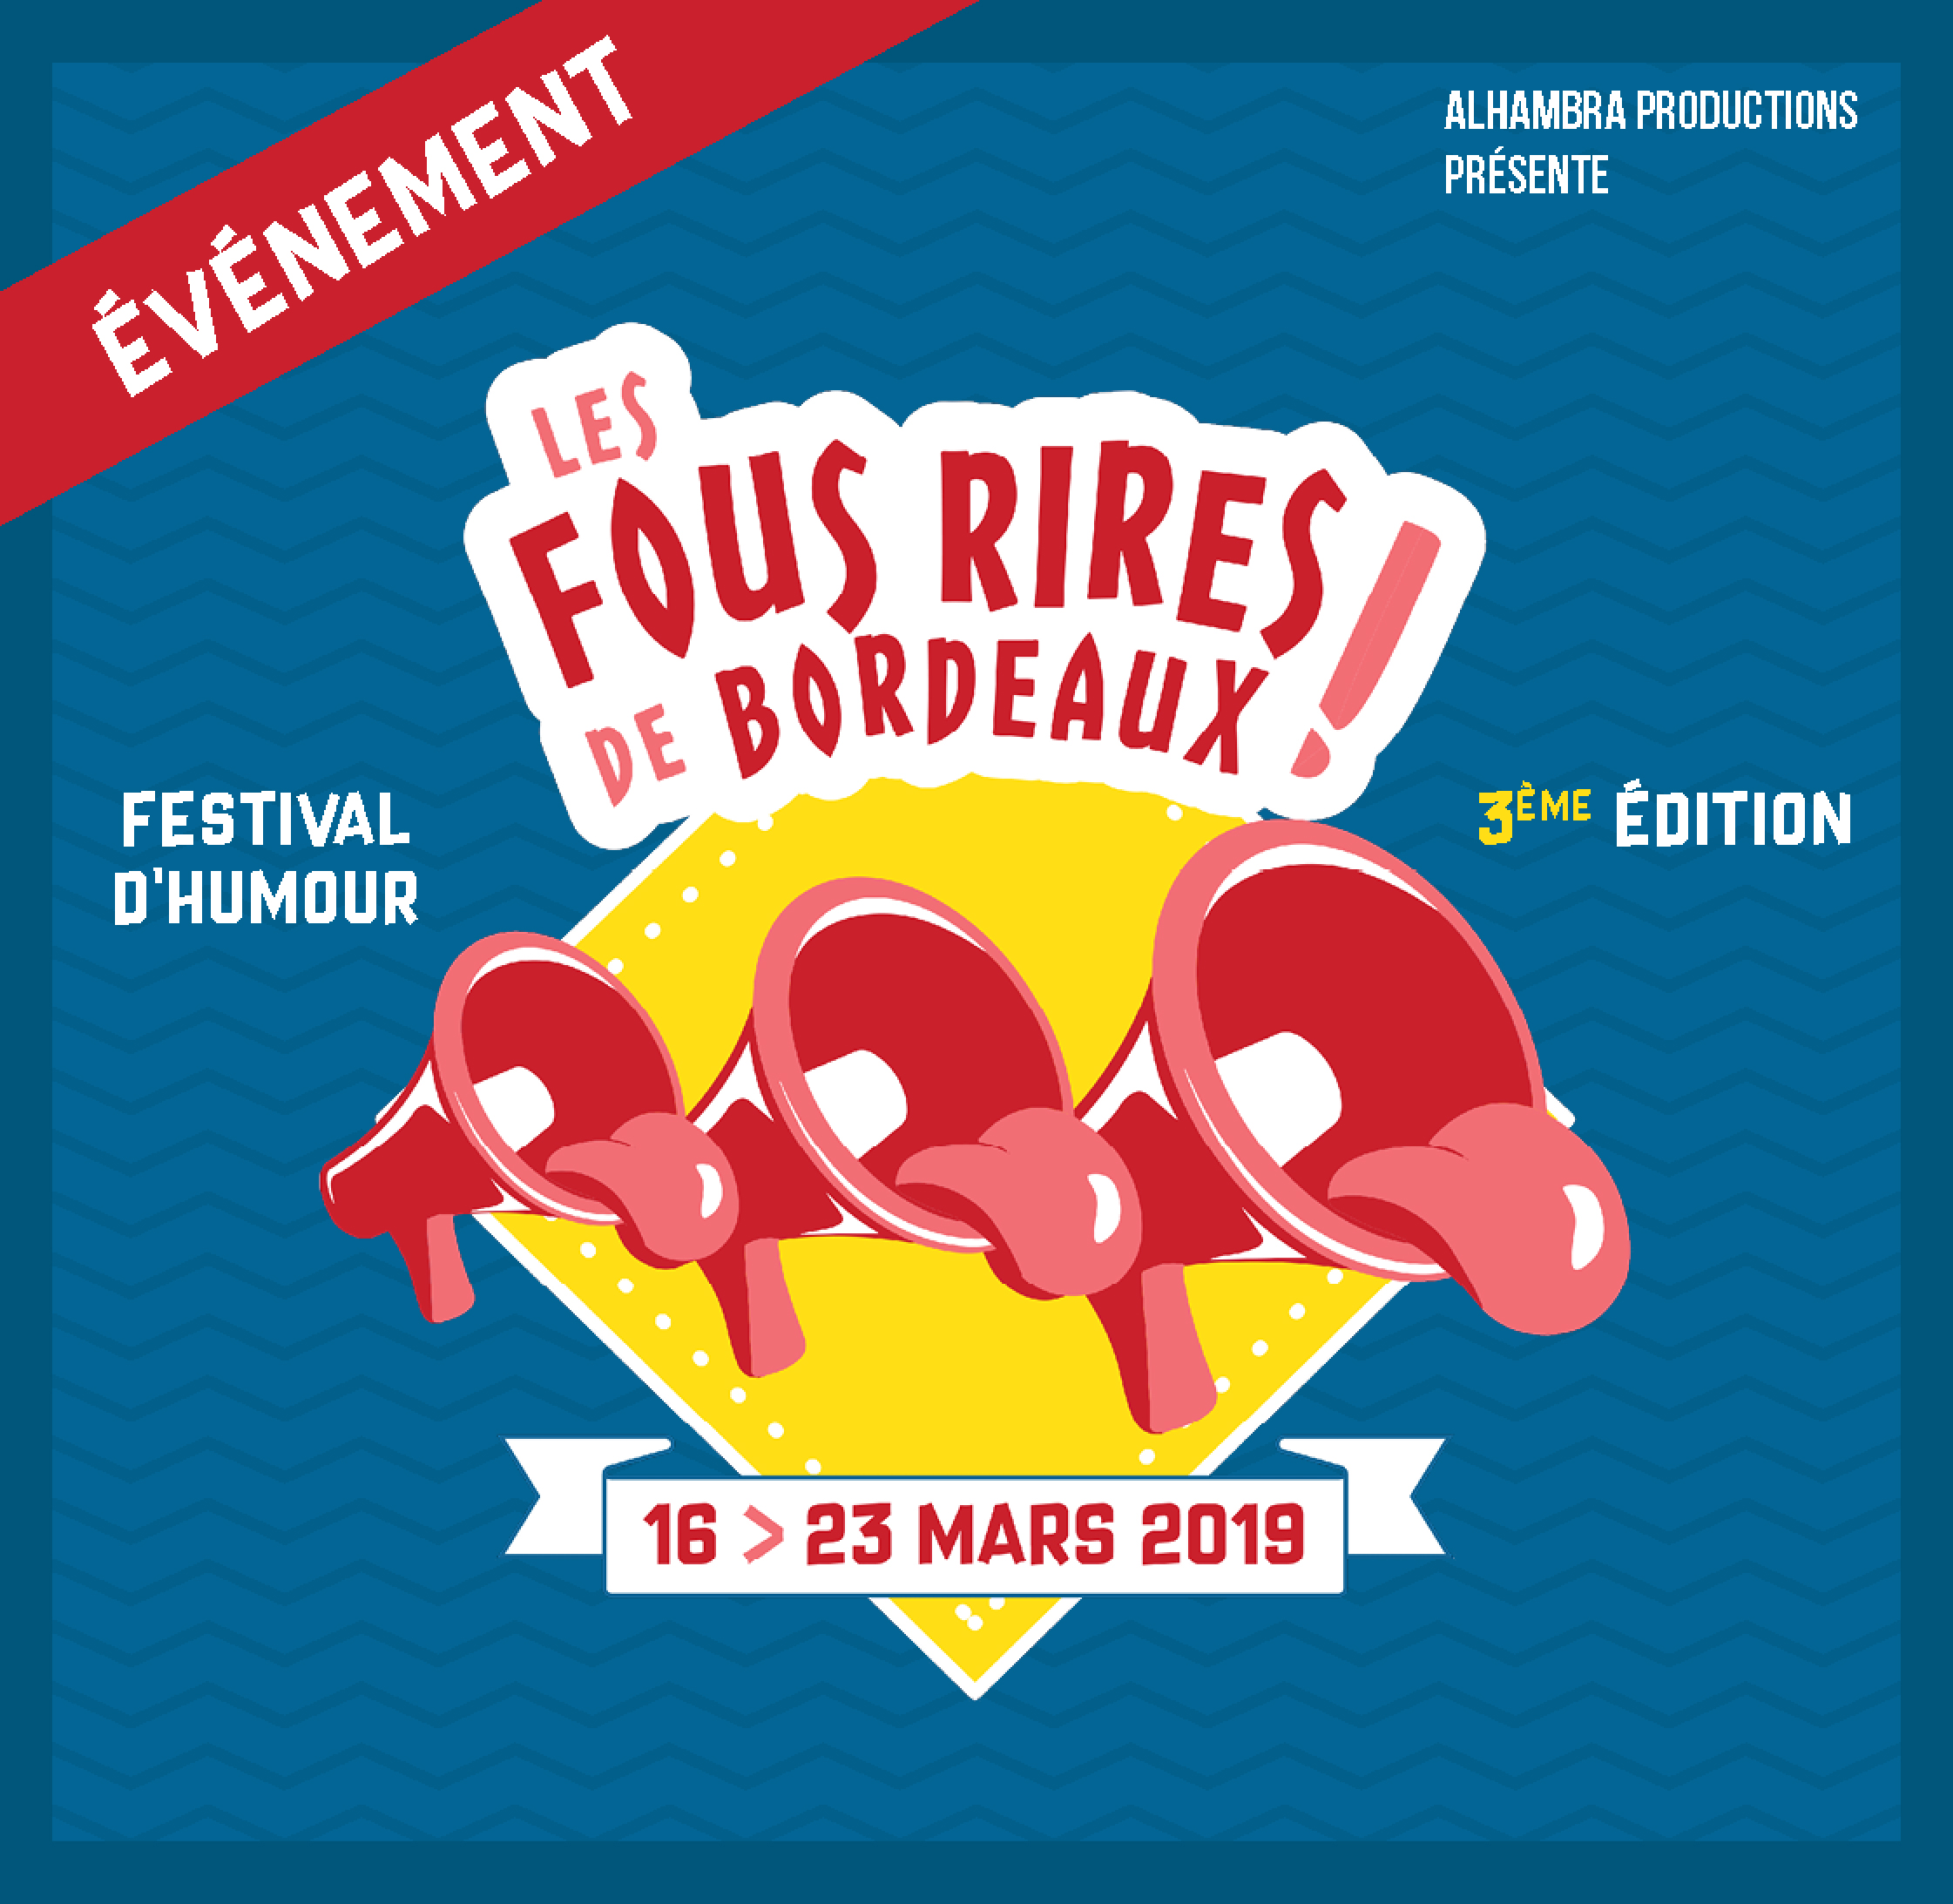 Après deux éditions couronnées de succès, LES FOUS RIRES DE BORDEAUX repartent pour une nouvelle aventure en 2019, du 16 au 23 mars